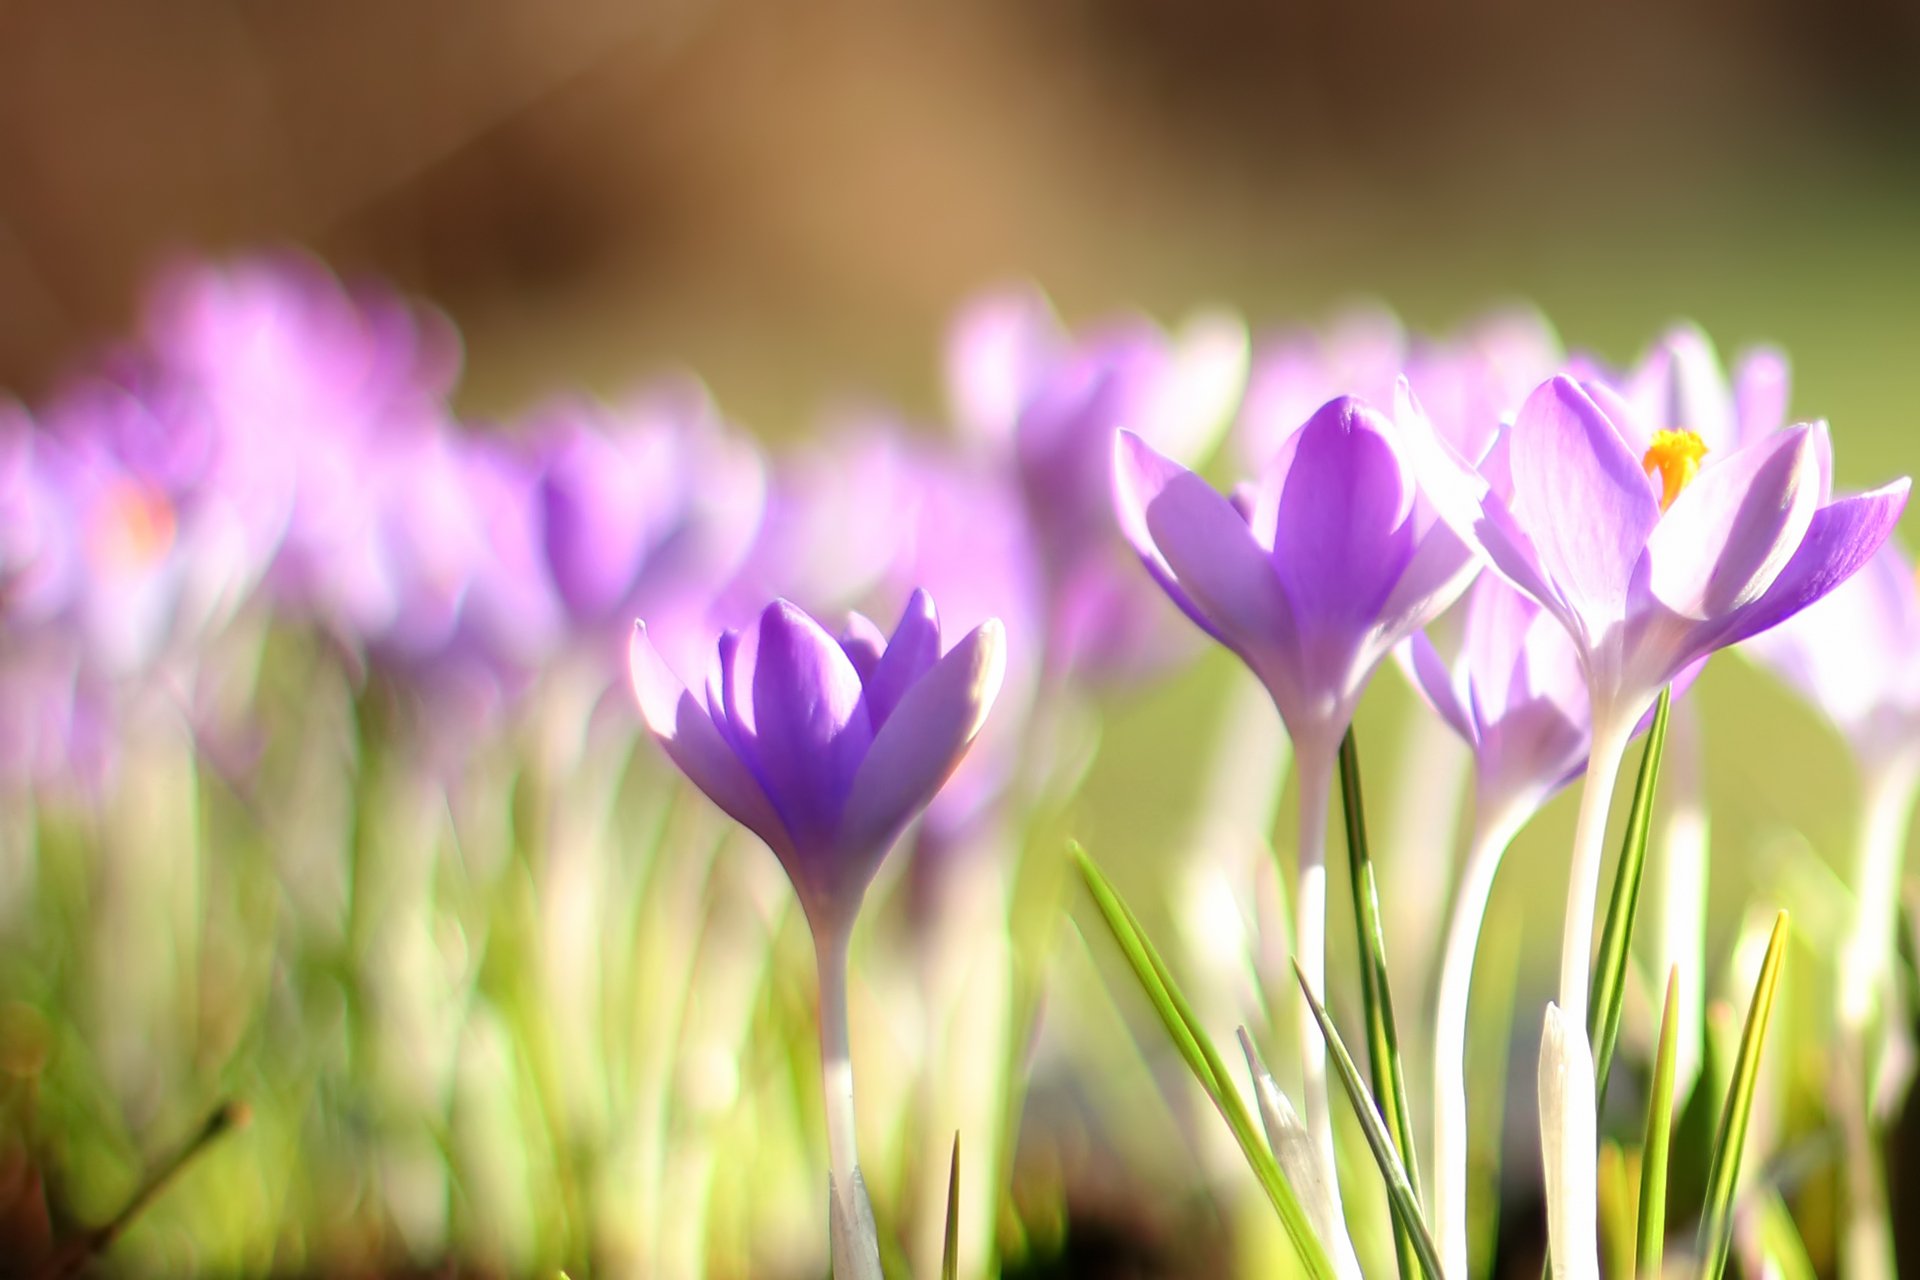 Найти картинки с весной. Крокус фиолетовый первоцвет. Первоцветы (подснежники, крокусы, гиацинты).. Весенние цветы первоцветы Крокус. Весенние первоцветы фиолетовые.